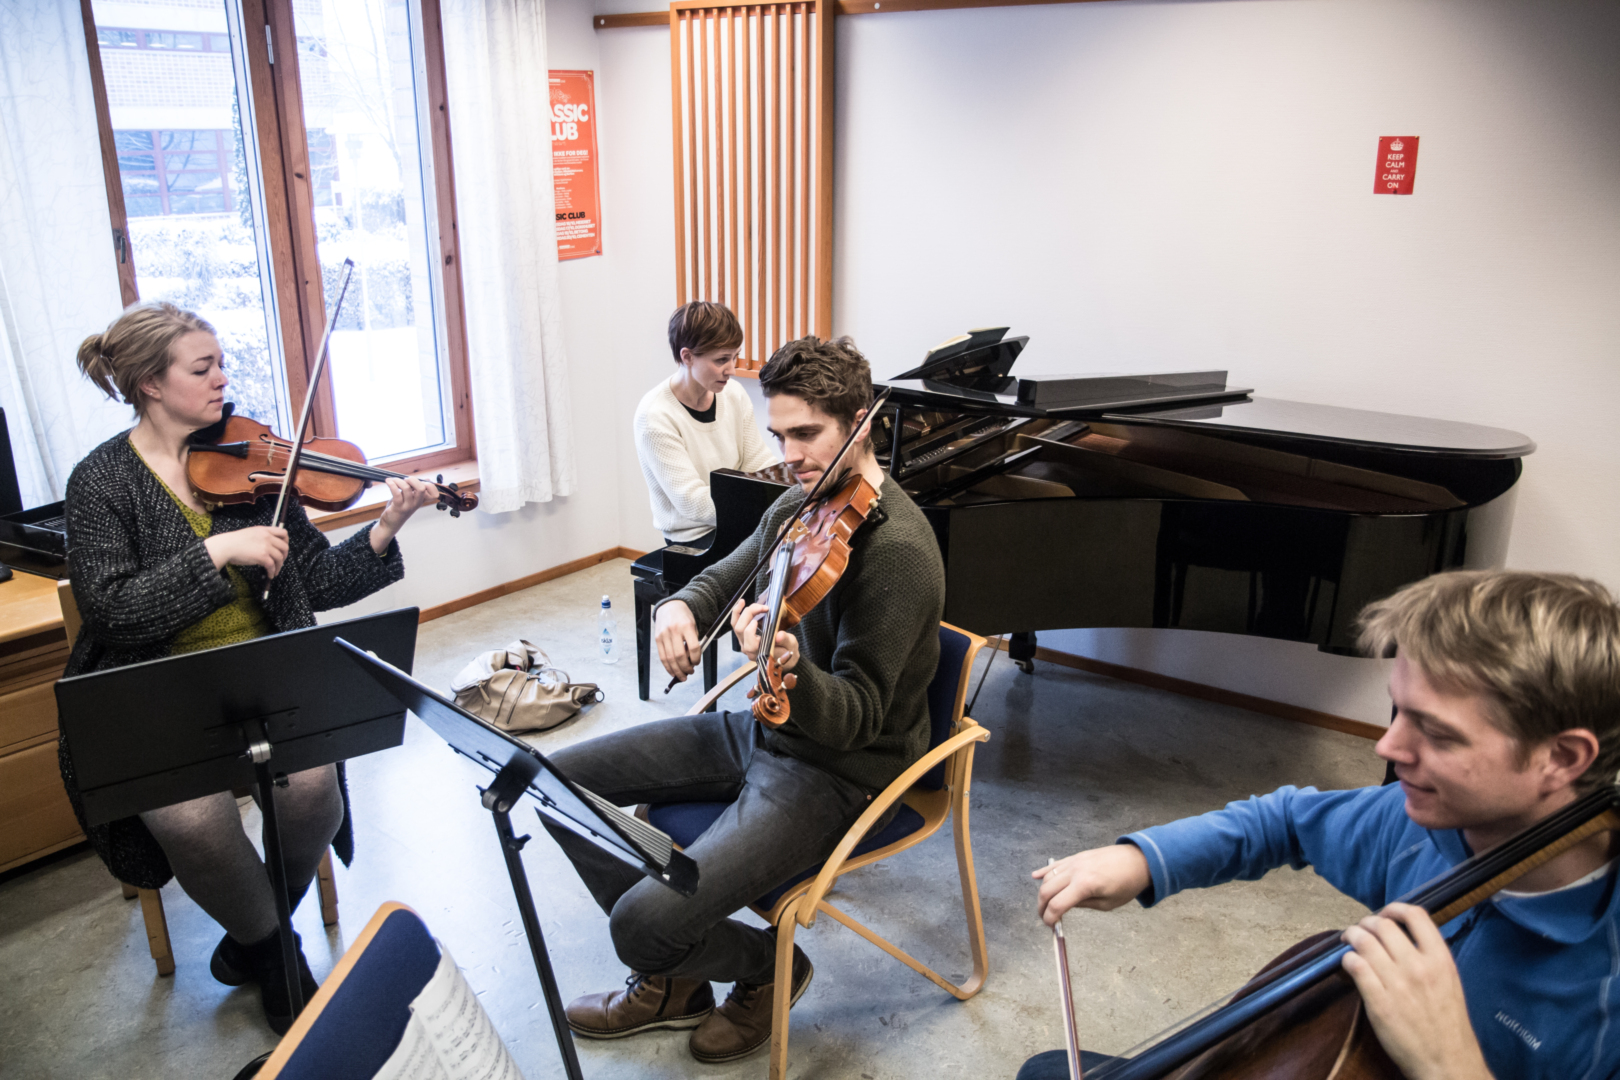 Solo og sammen: Kammermusikk er en viktig del av karrieren. Her fra øvelse med Maria Angelika Carlsen, Einar Kyvik Bauge og Jan Clemens Carlsen til KORKs kammermusikkserie.